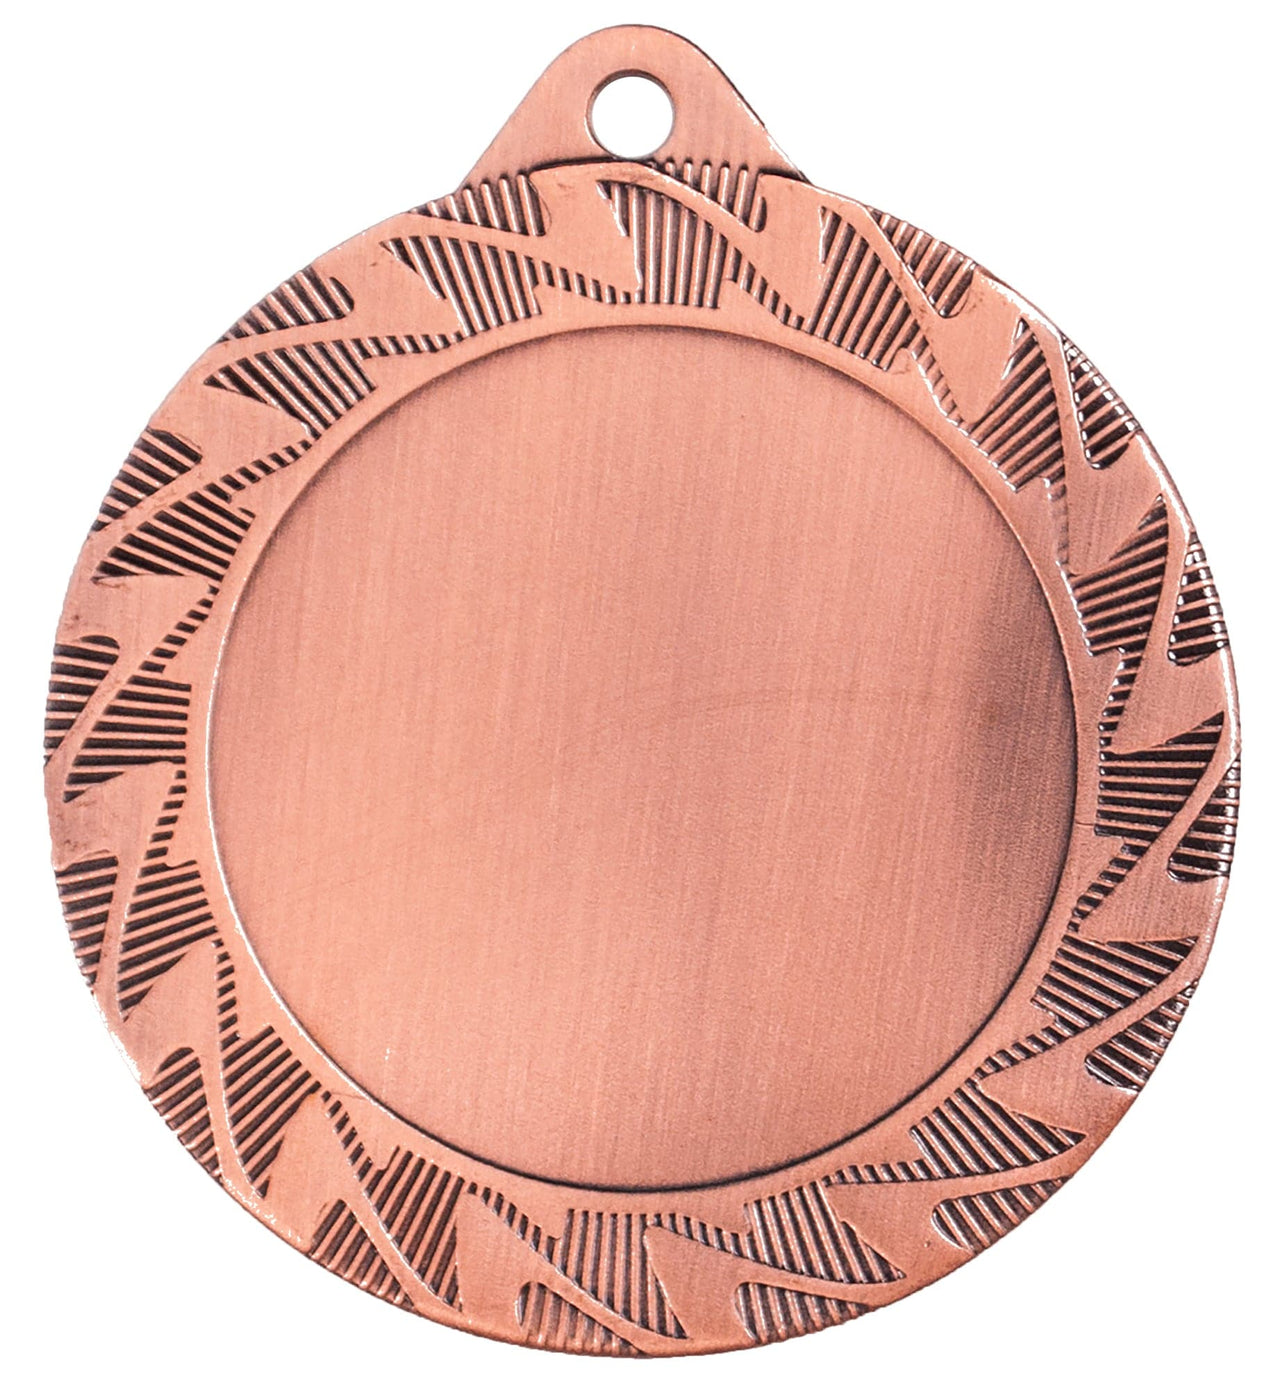 Runde Bronzemedaille mit dekorativem Rand und leerer Mitte zum Gravieren, eine hochwertige Medaille von Würzburg, 70 mm, PK79310g-E50.